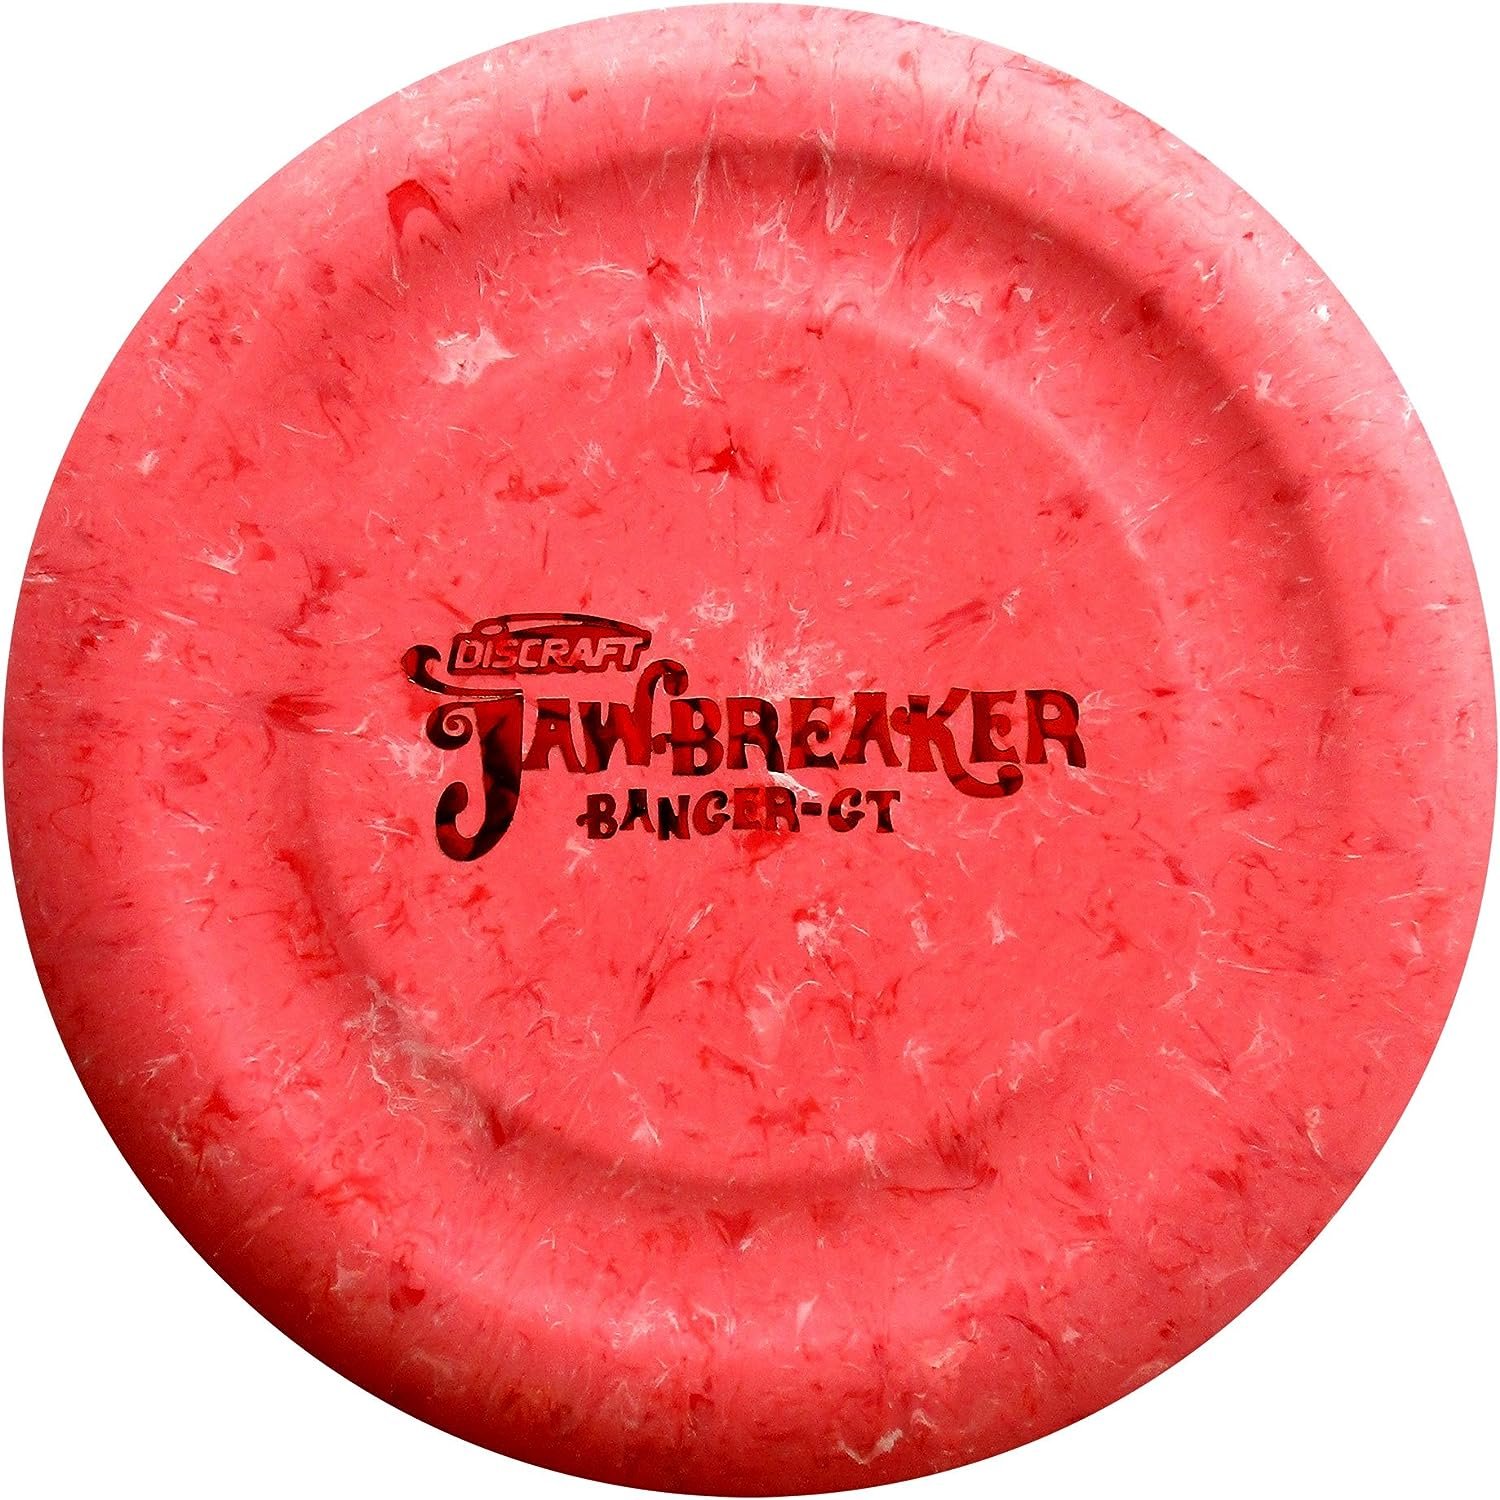 Discrafts Jawbreaker Banger-GT 173-174 Gram Putt and Approach Golf Disc